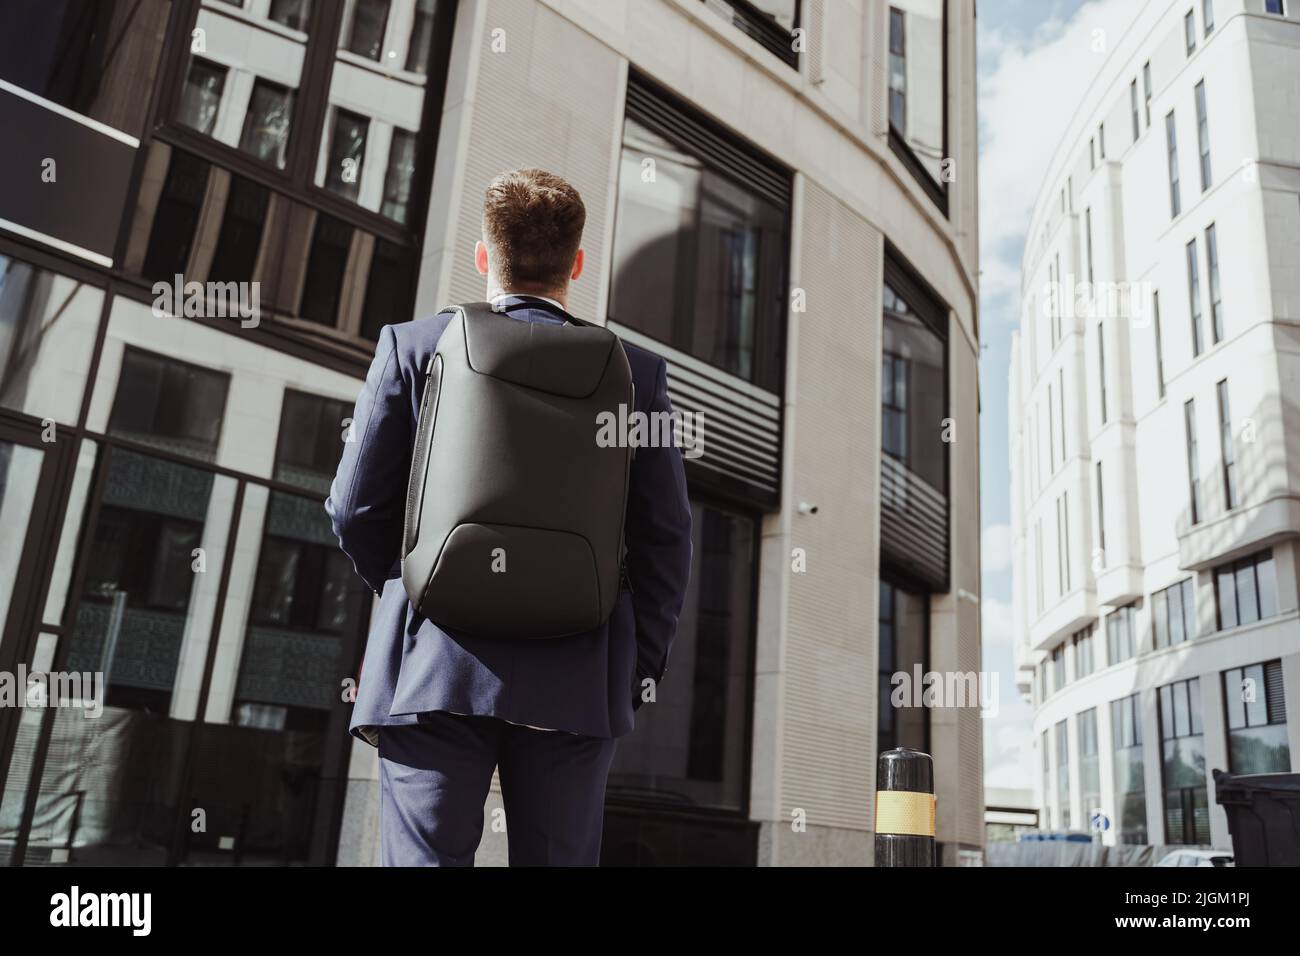 Der junge Angestellte in einem Anzug mit Rucksack steht vor einem Firmengebäude und schaut nach oben, von hinten. Praktikum, Vorstellungsgespräch, neuer Job Stockfoto